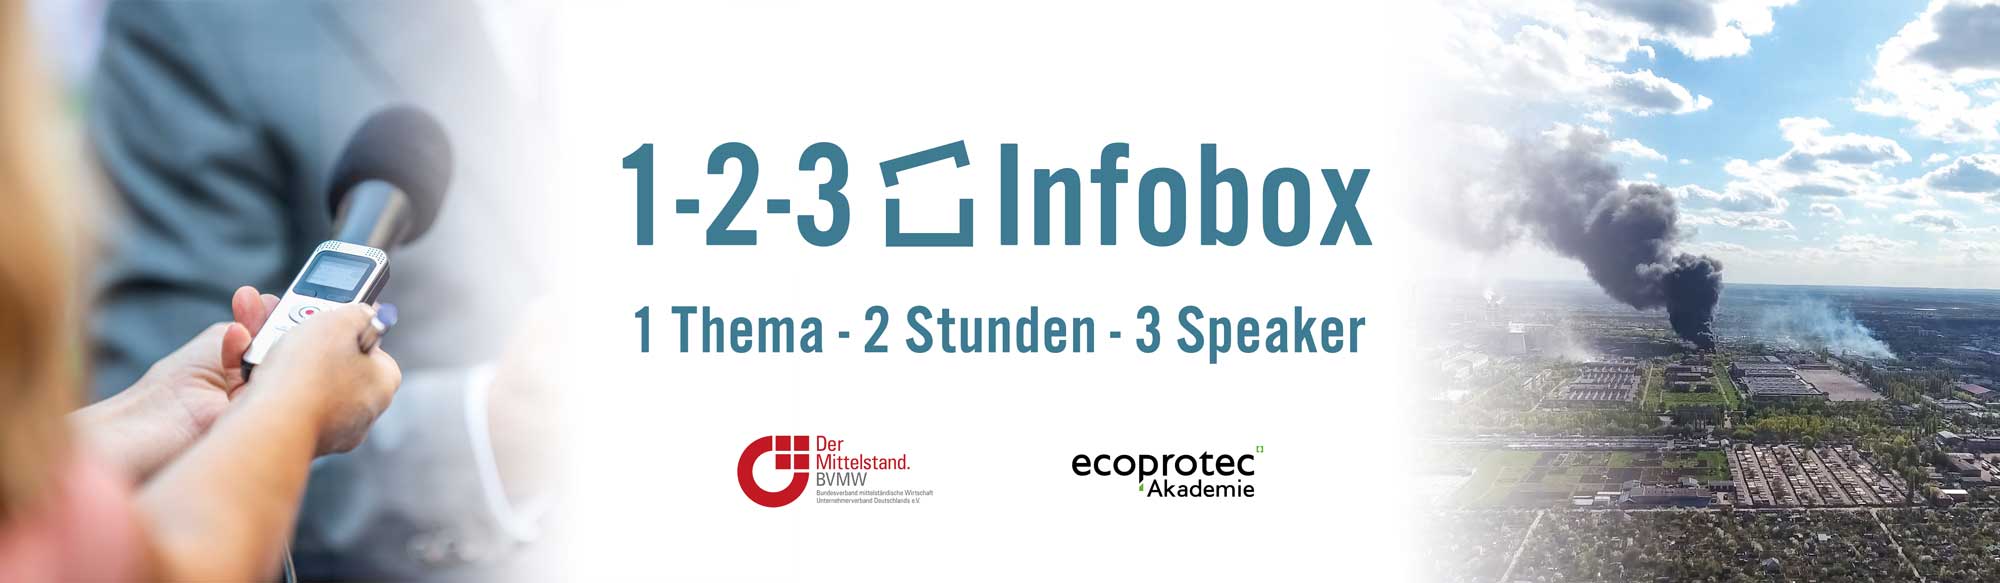 1-2-3 Infobox Krisenkommunikation und Notfallmanagement Einladung Veranstaltung Event ecoprotec